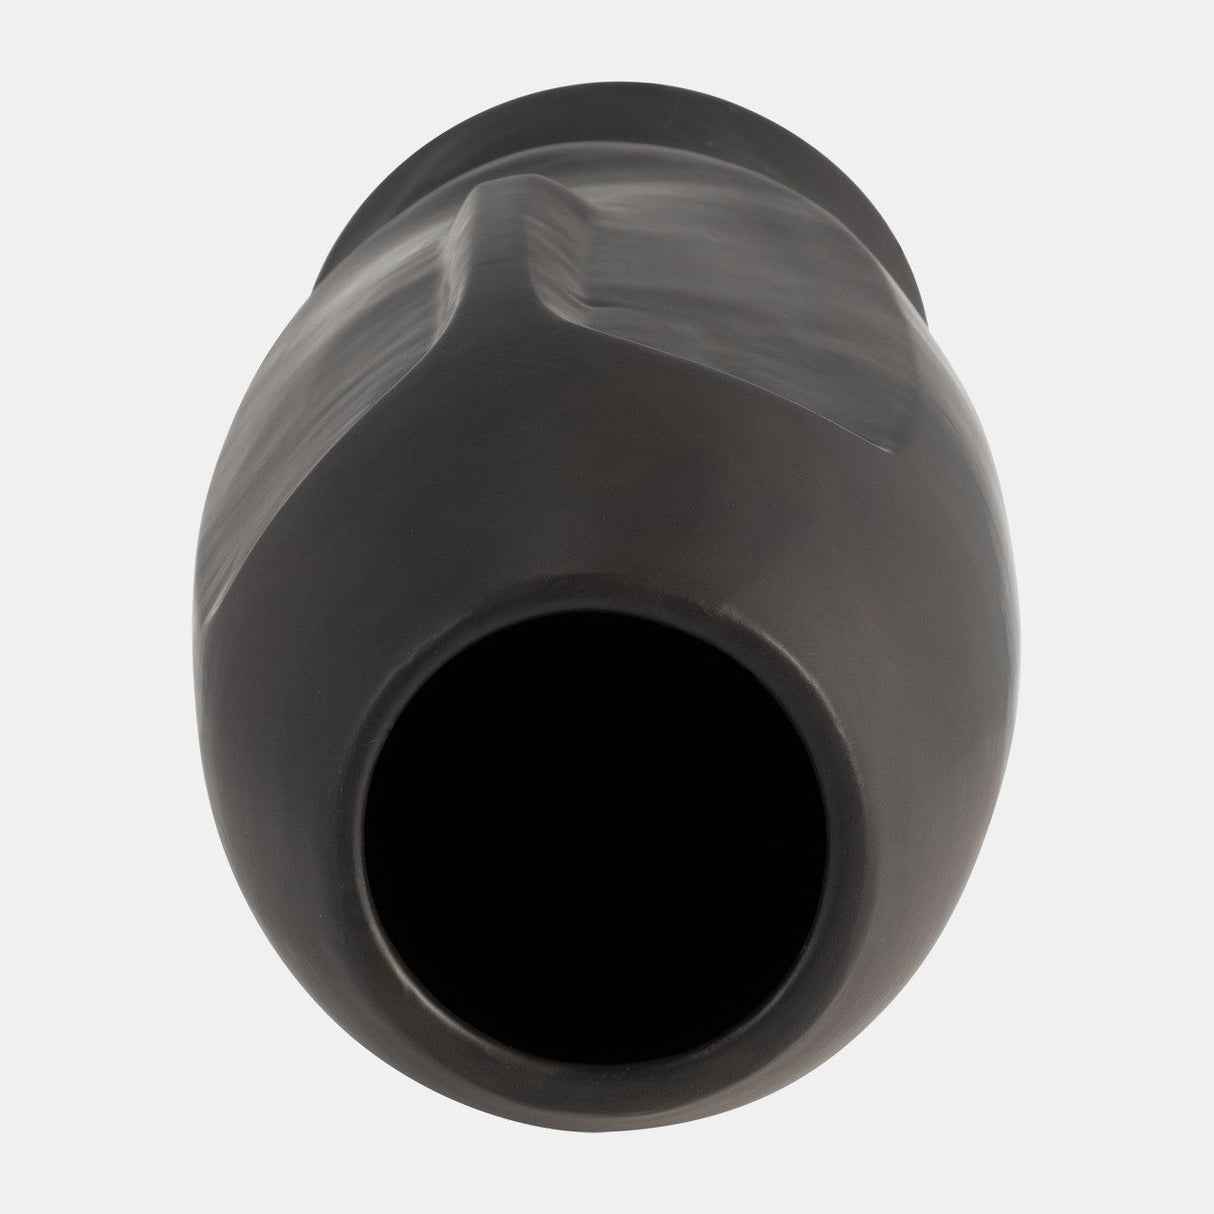 14"h Face Vase, Black